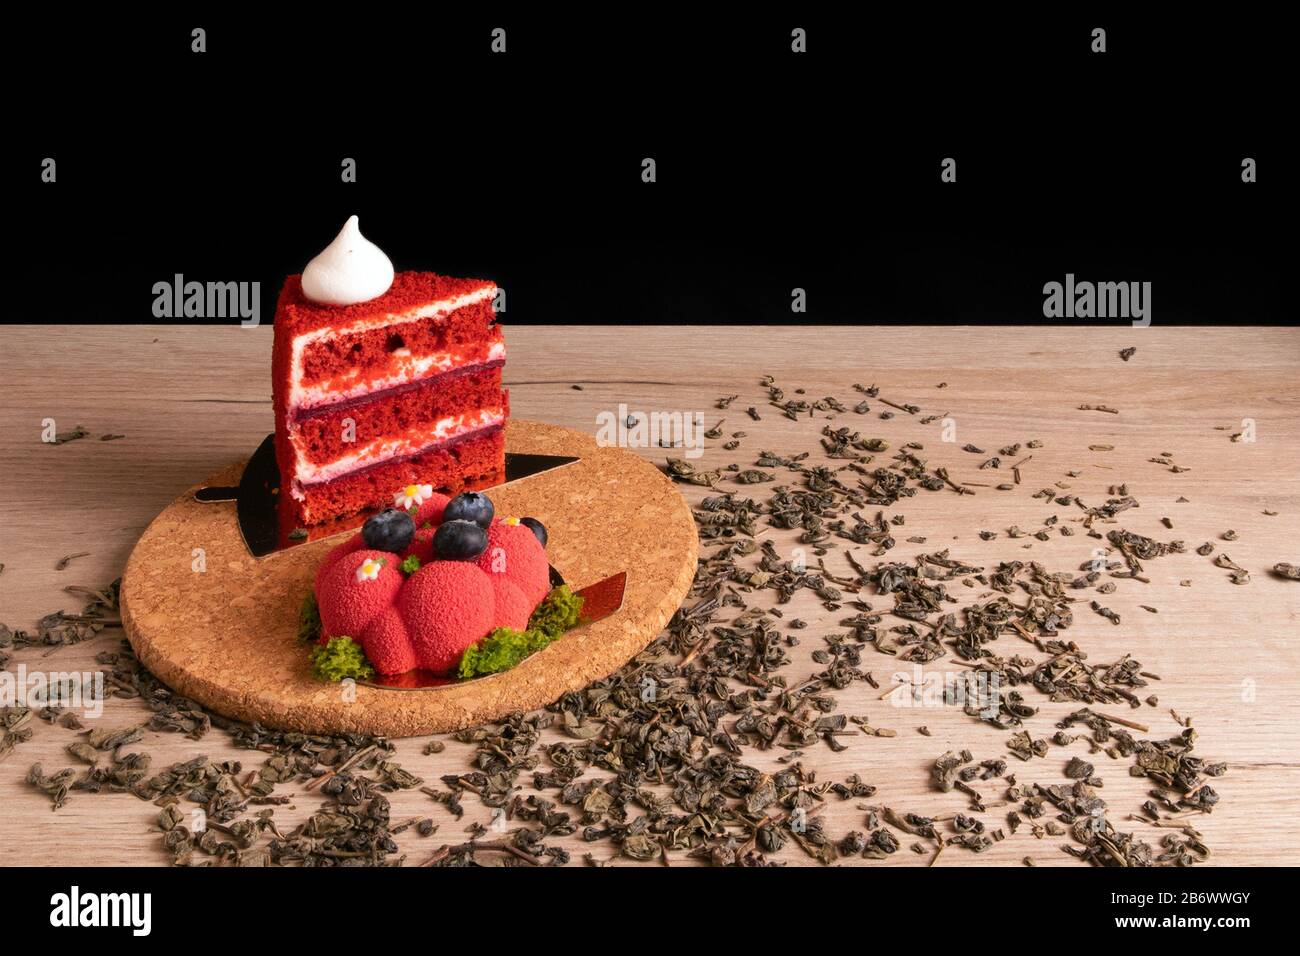 Due deliziose torte rosse appetitose su un supporto in sughero con tè verde secco sparso Foto Stock